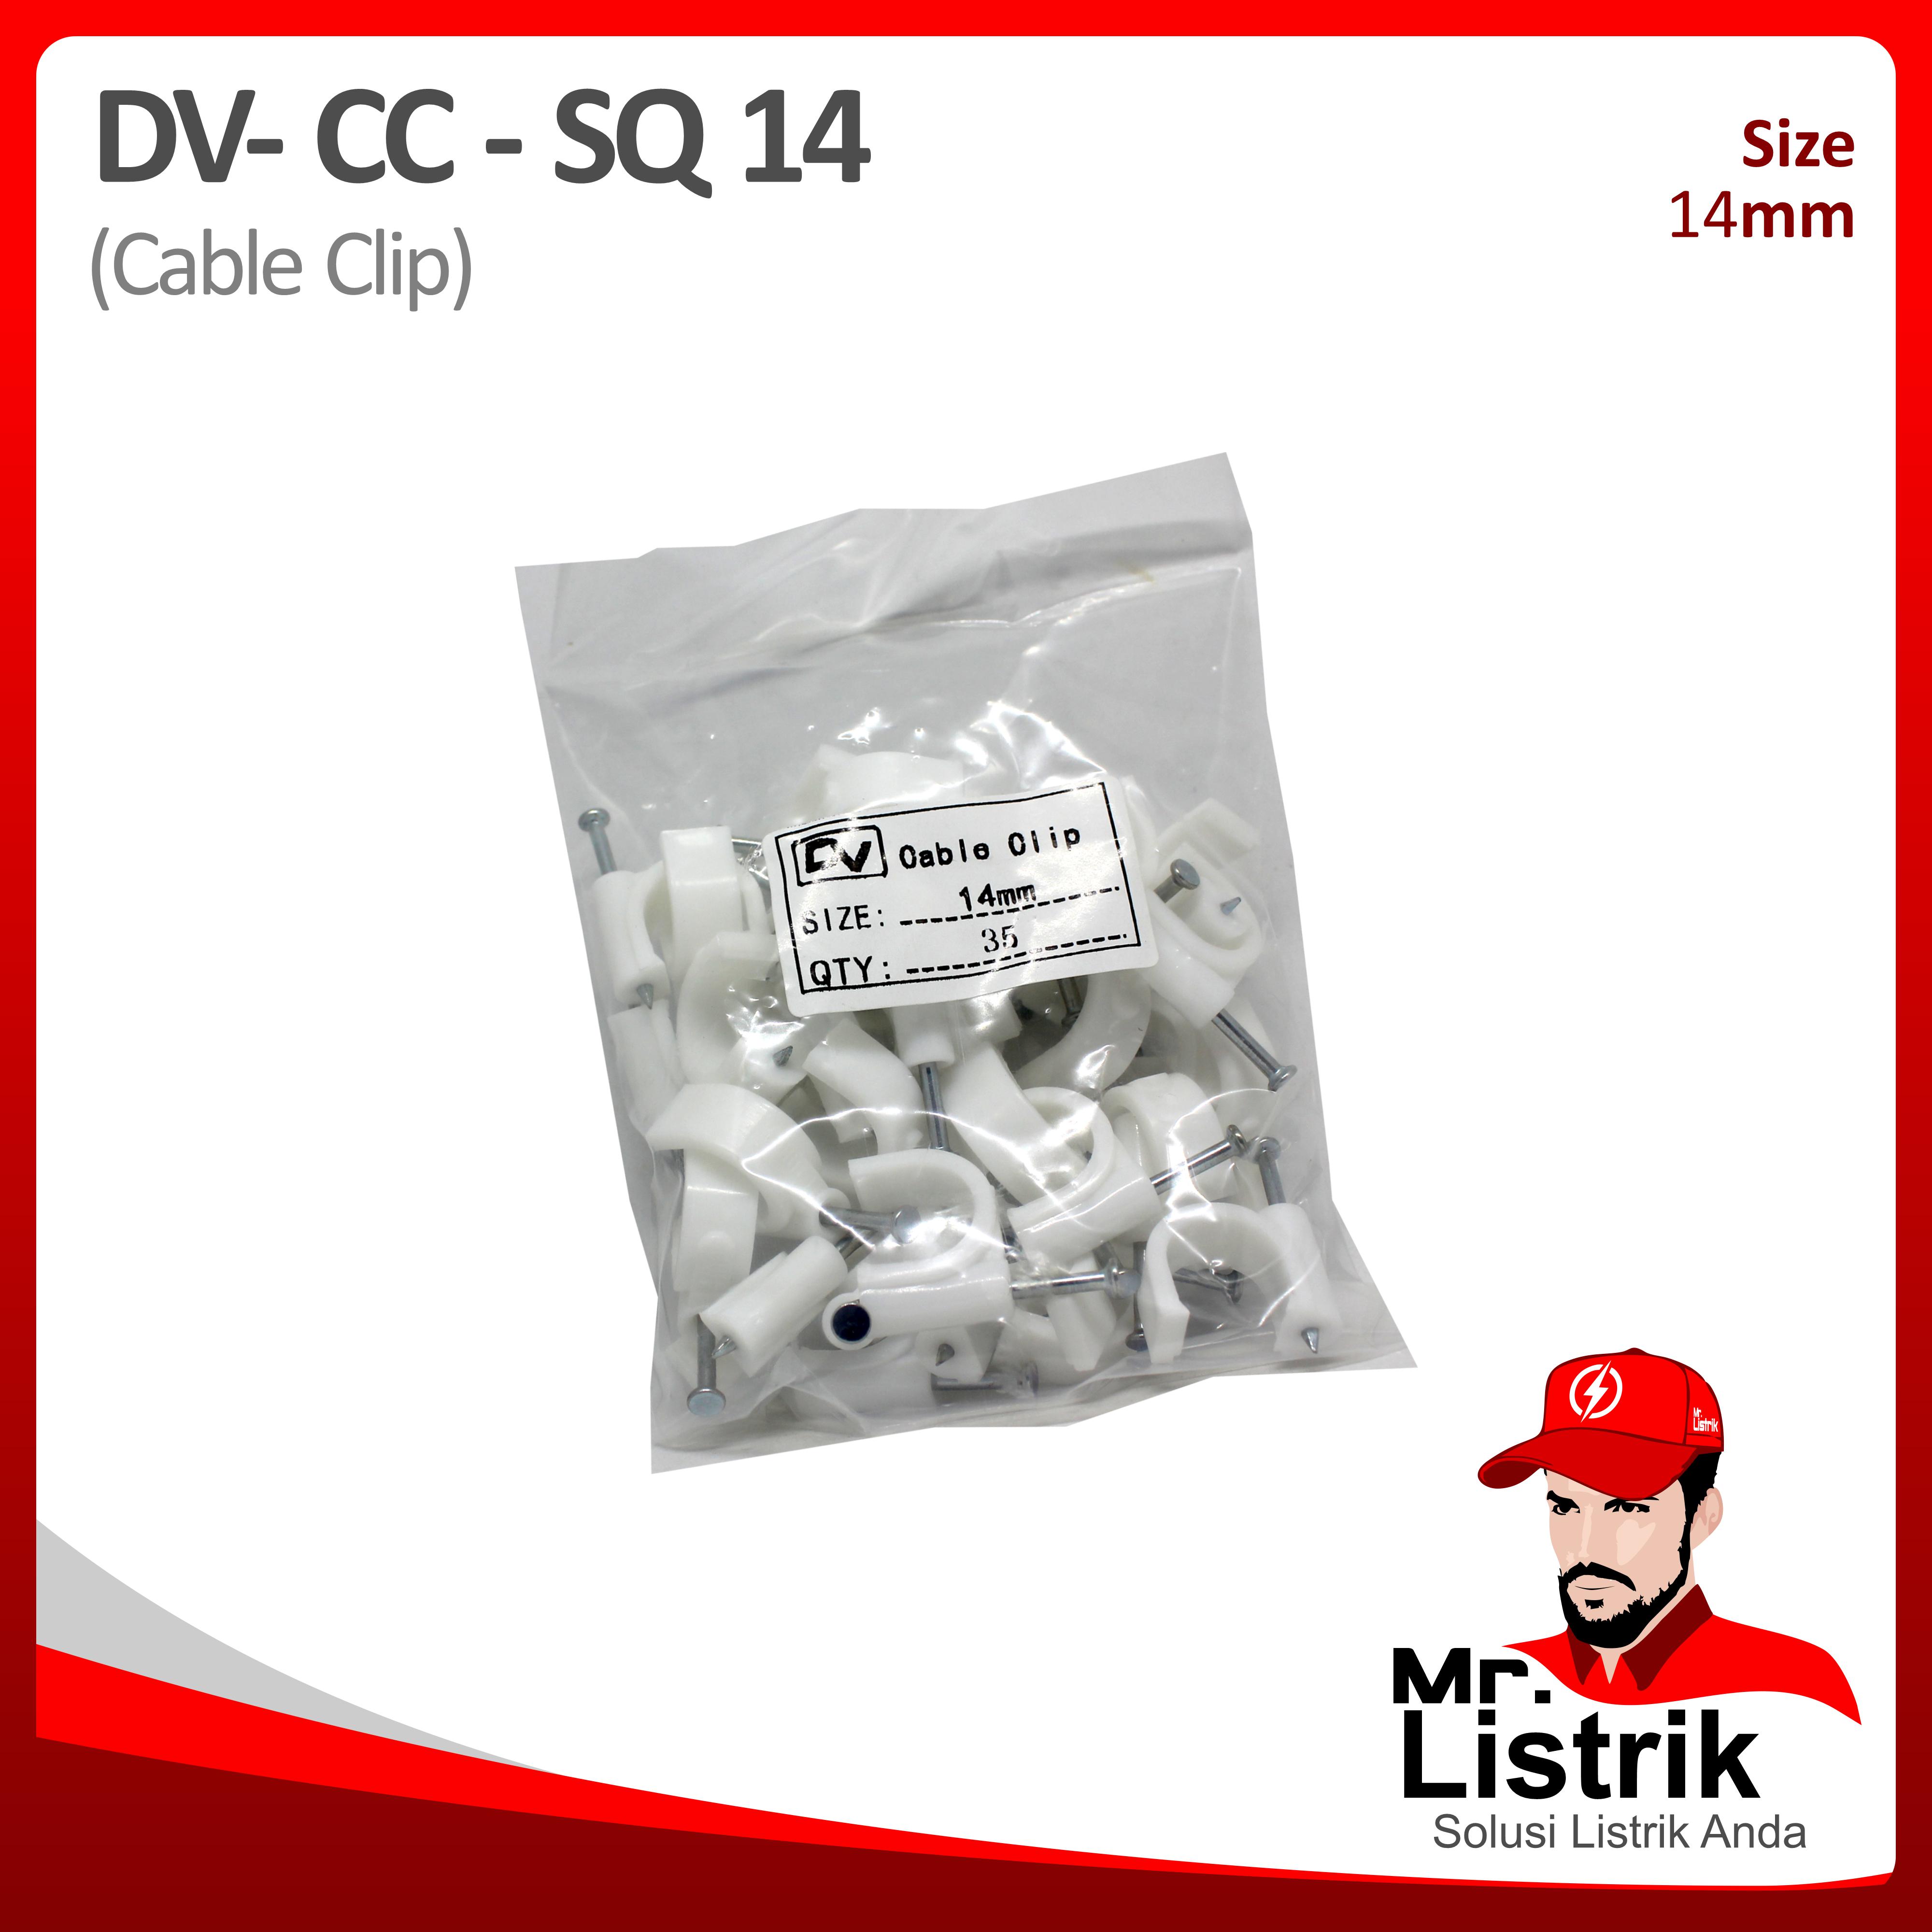 Cable Clip 14mm DV CC-SQ 14